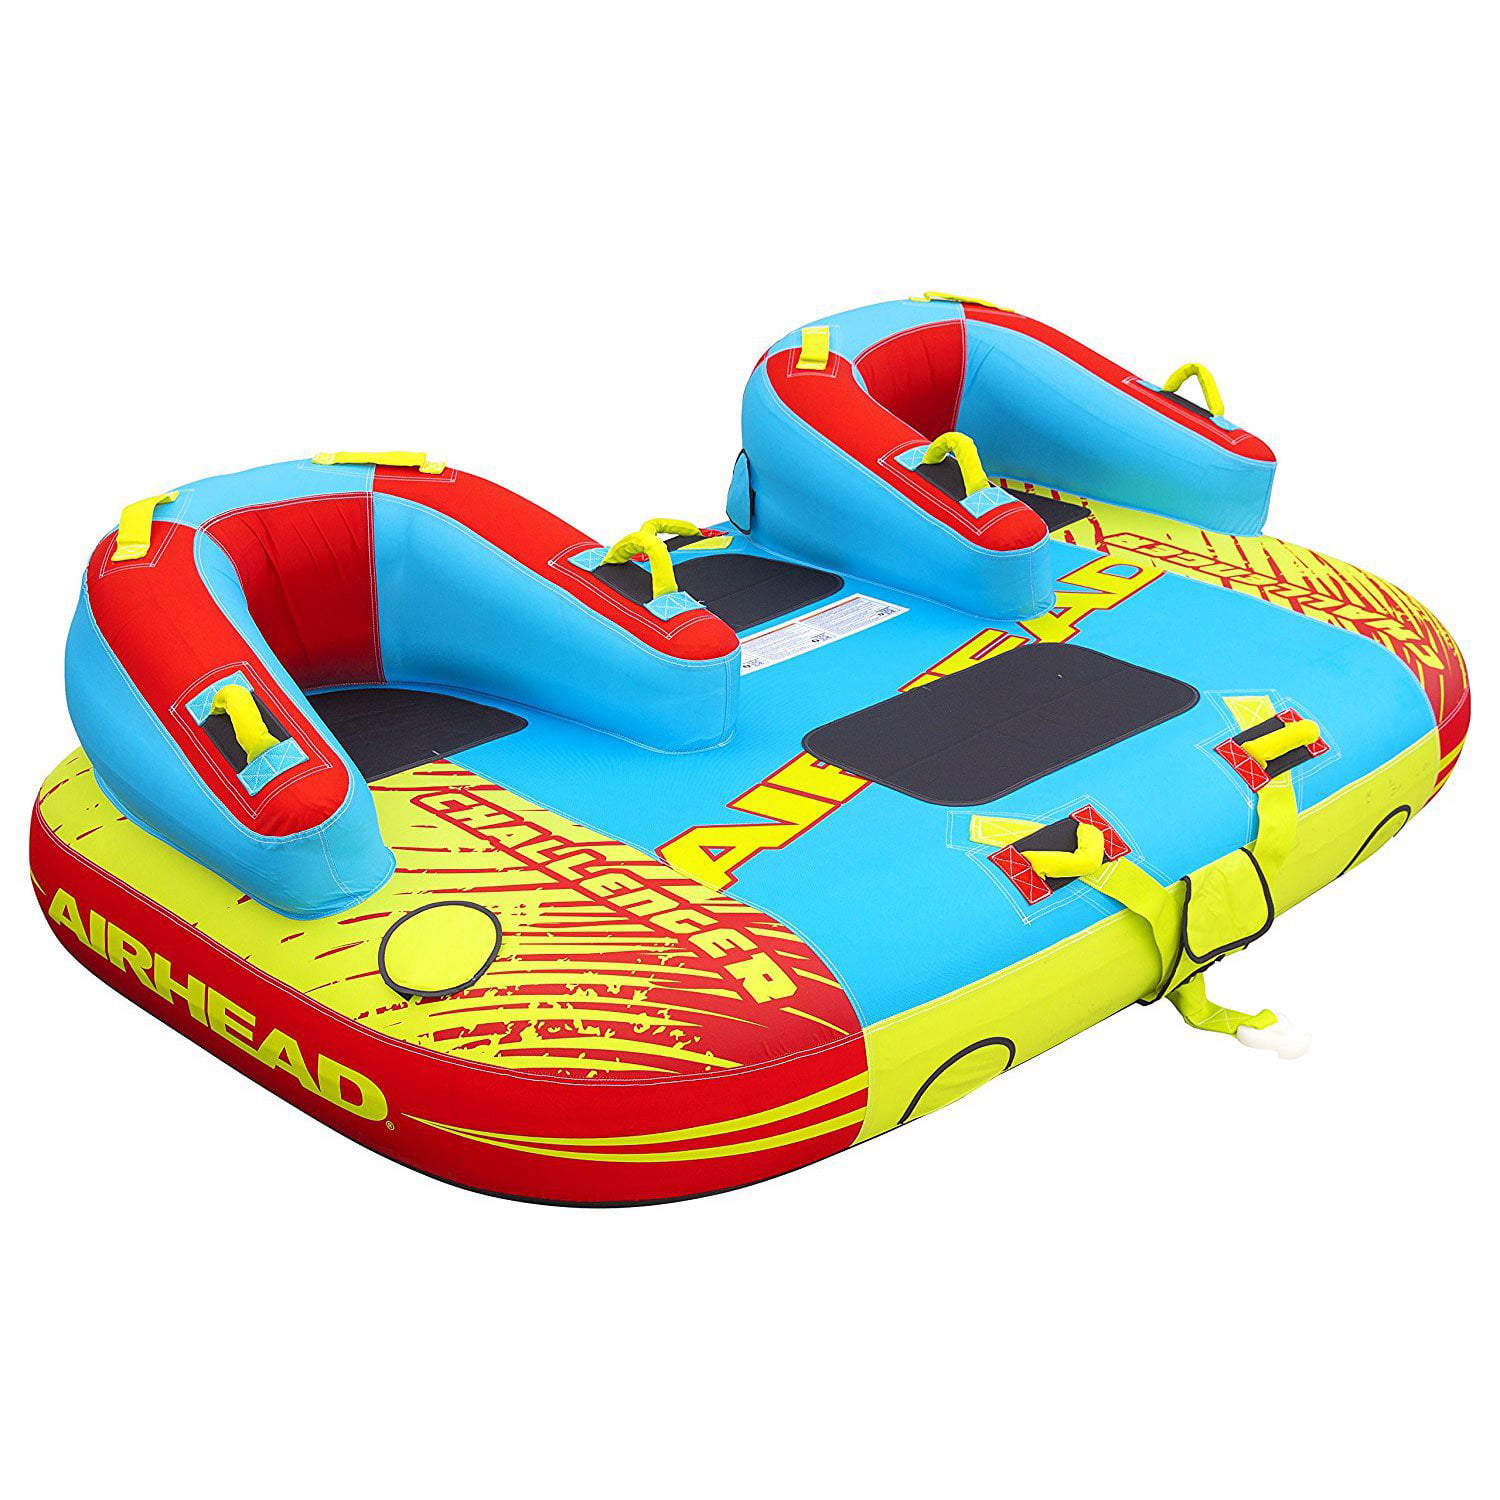 AIRHEAD AHEZ-100 EZ Ski Inflatable Trainer Junior Child Kids 